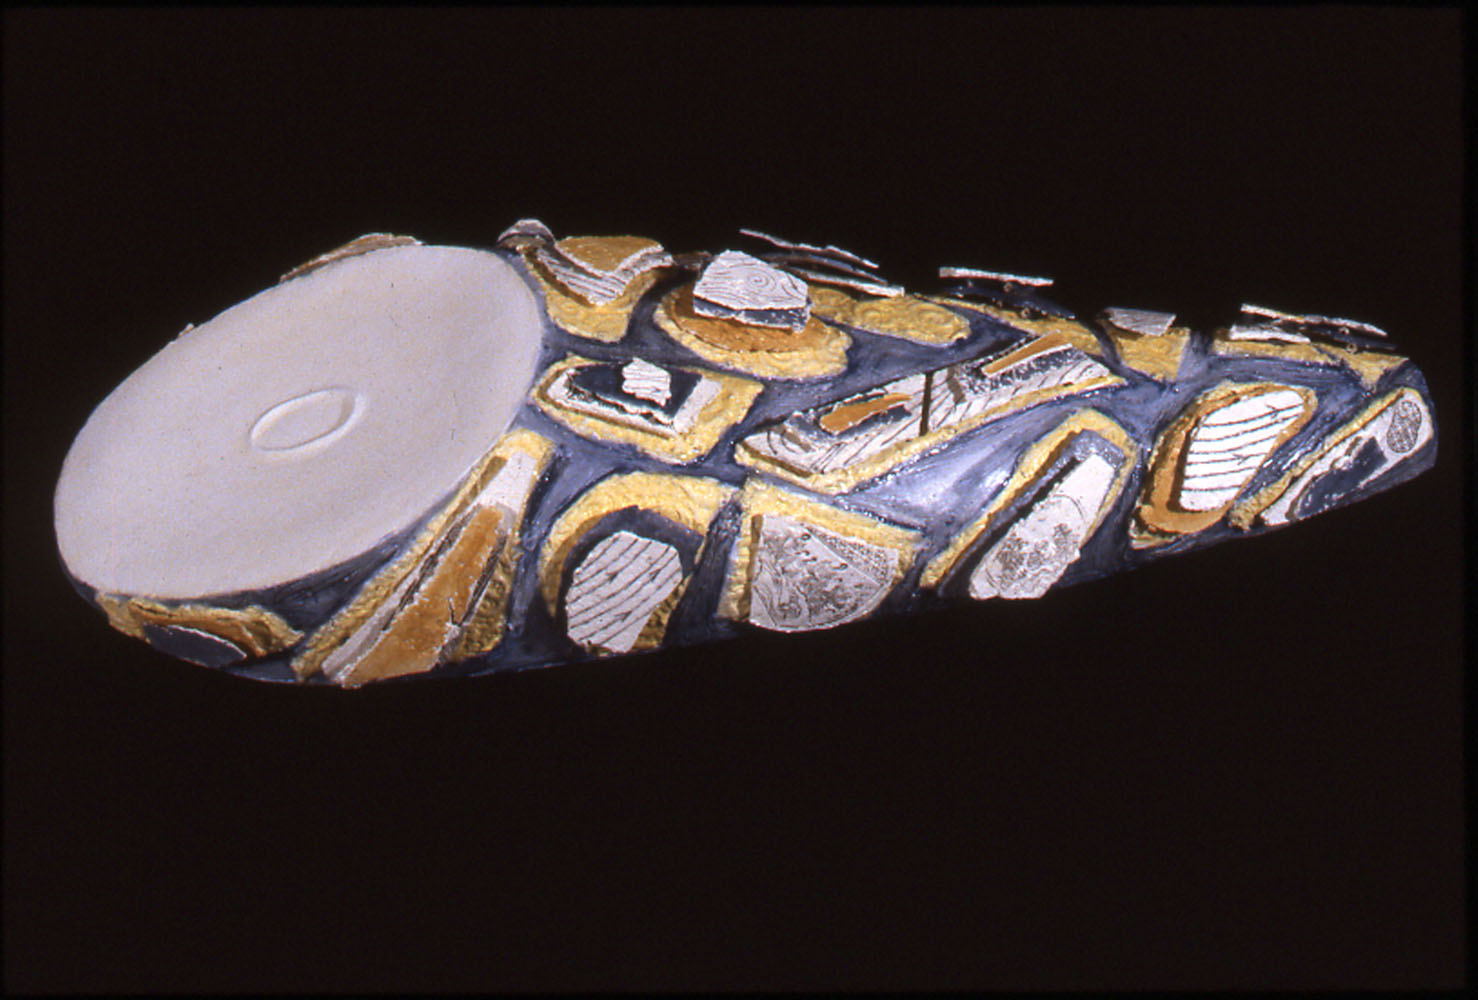    Seto Swirl,  1998, 44” x 17” x 8”, low-fire paper clay, stamped underglazes, glazes  